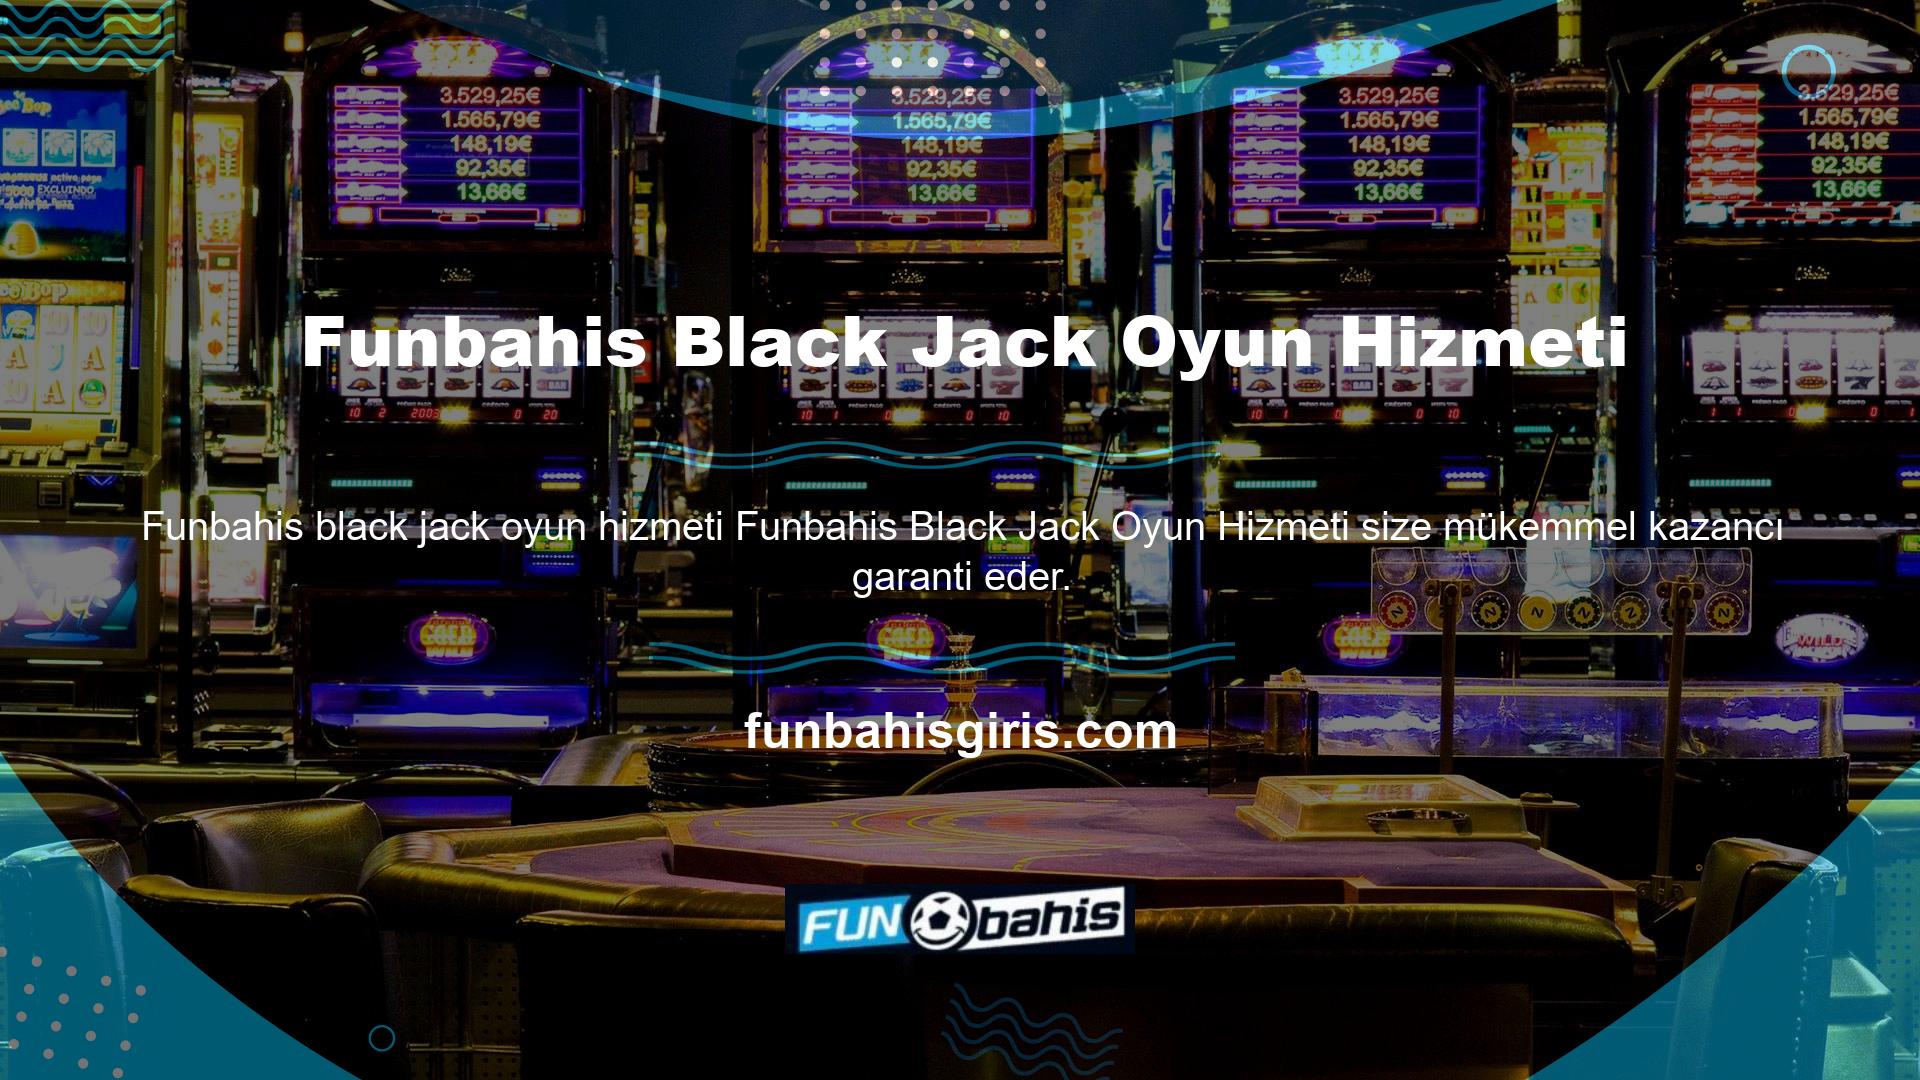 Sadece tek bir tıklamayla çevrimiçi bahis platformlarına giriş yapabilir ve kazanan Black Jack oyunlarına katılabilirsiniz